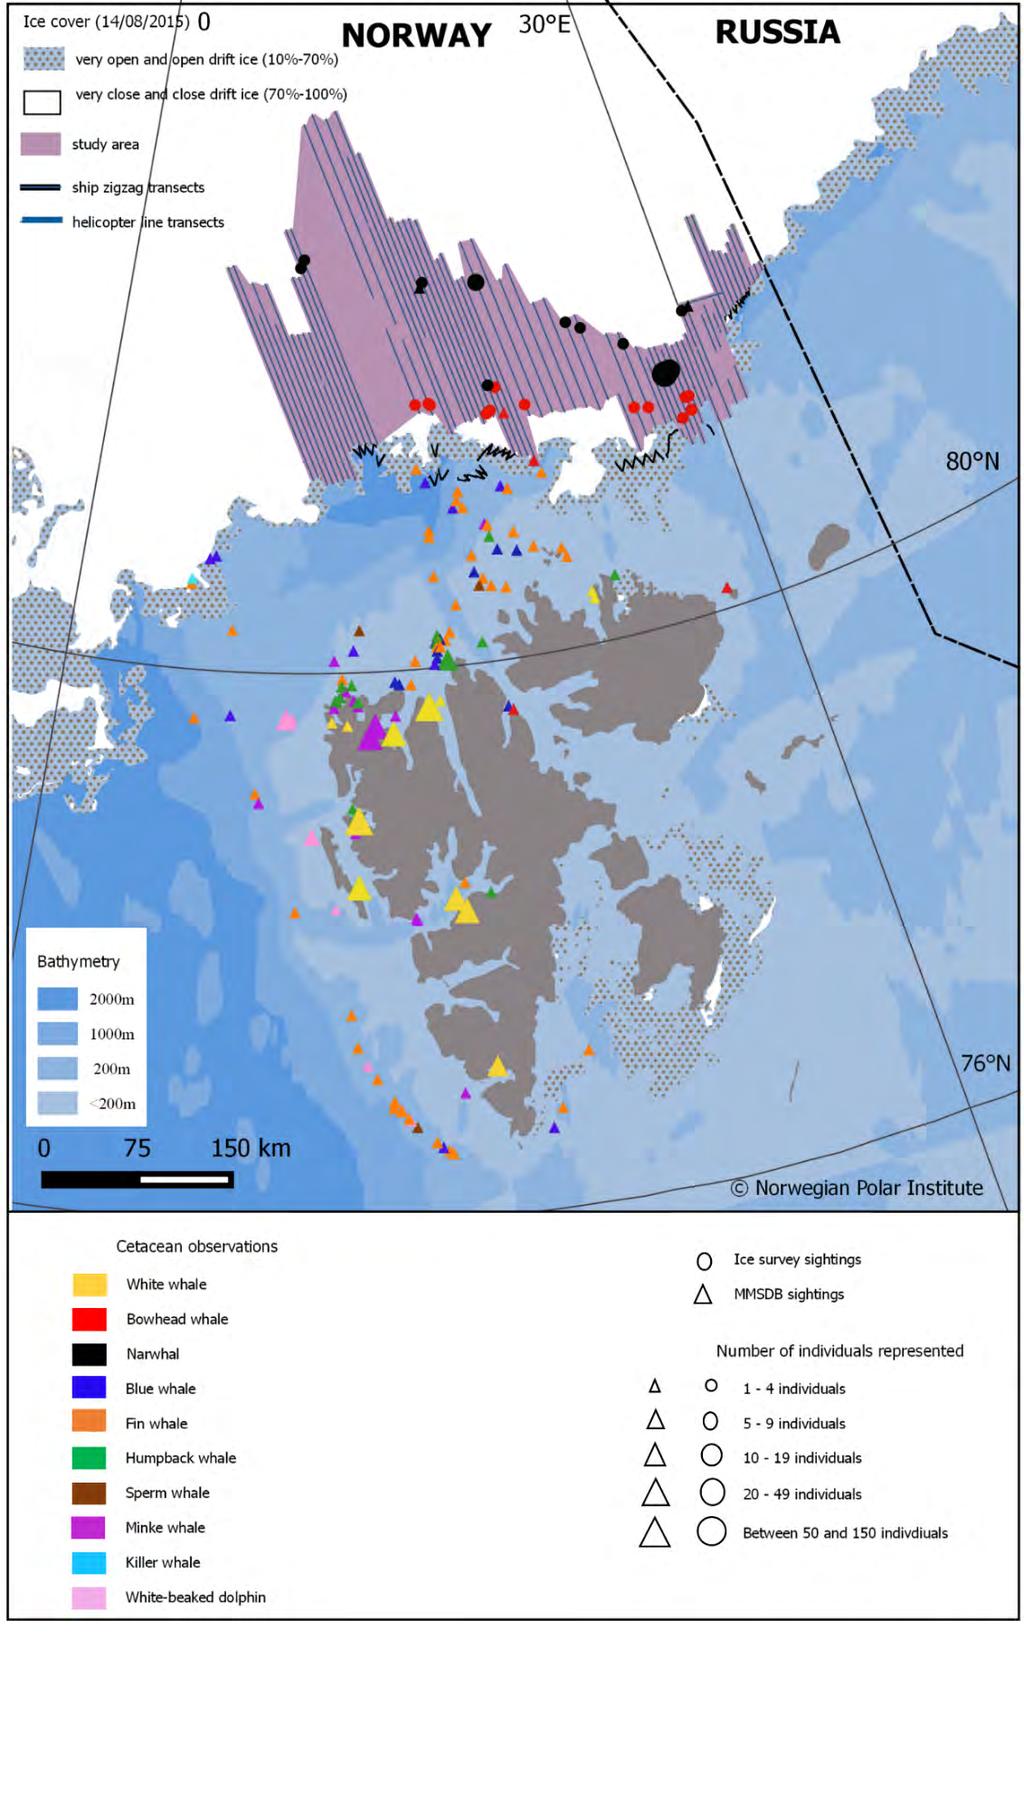 Figur 2. Øvre del av figuren viser grønlandshval og narhval observert i iskantsonen under en telling i august 2015 (Kilde: Vacquié -Garcia et al. 2017).